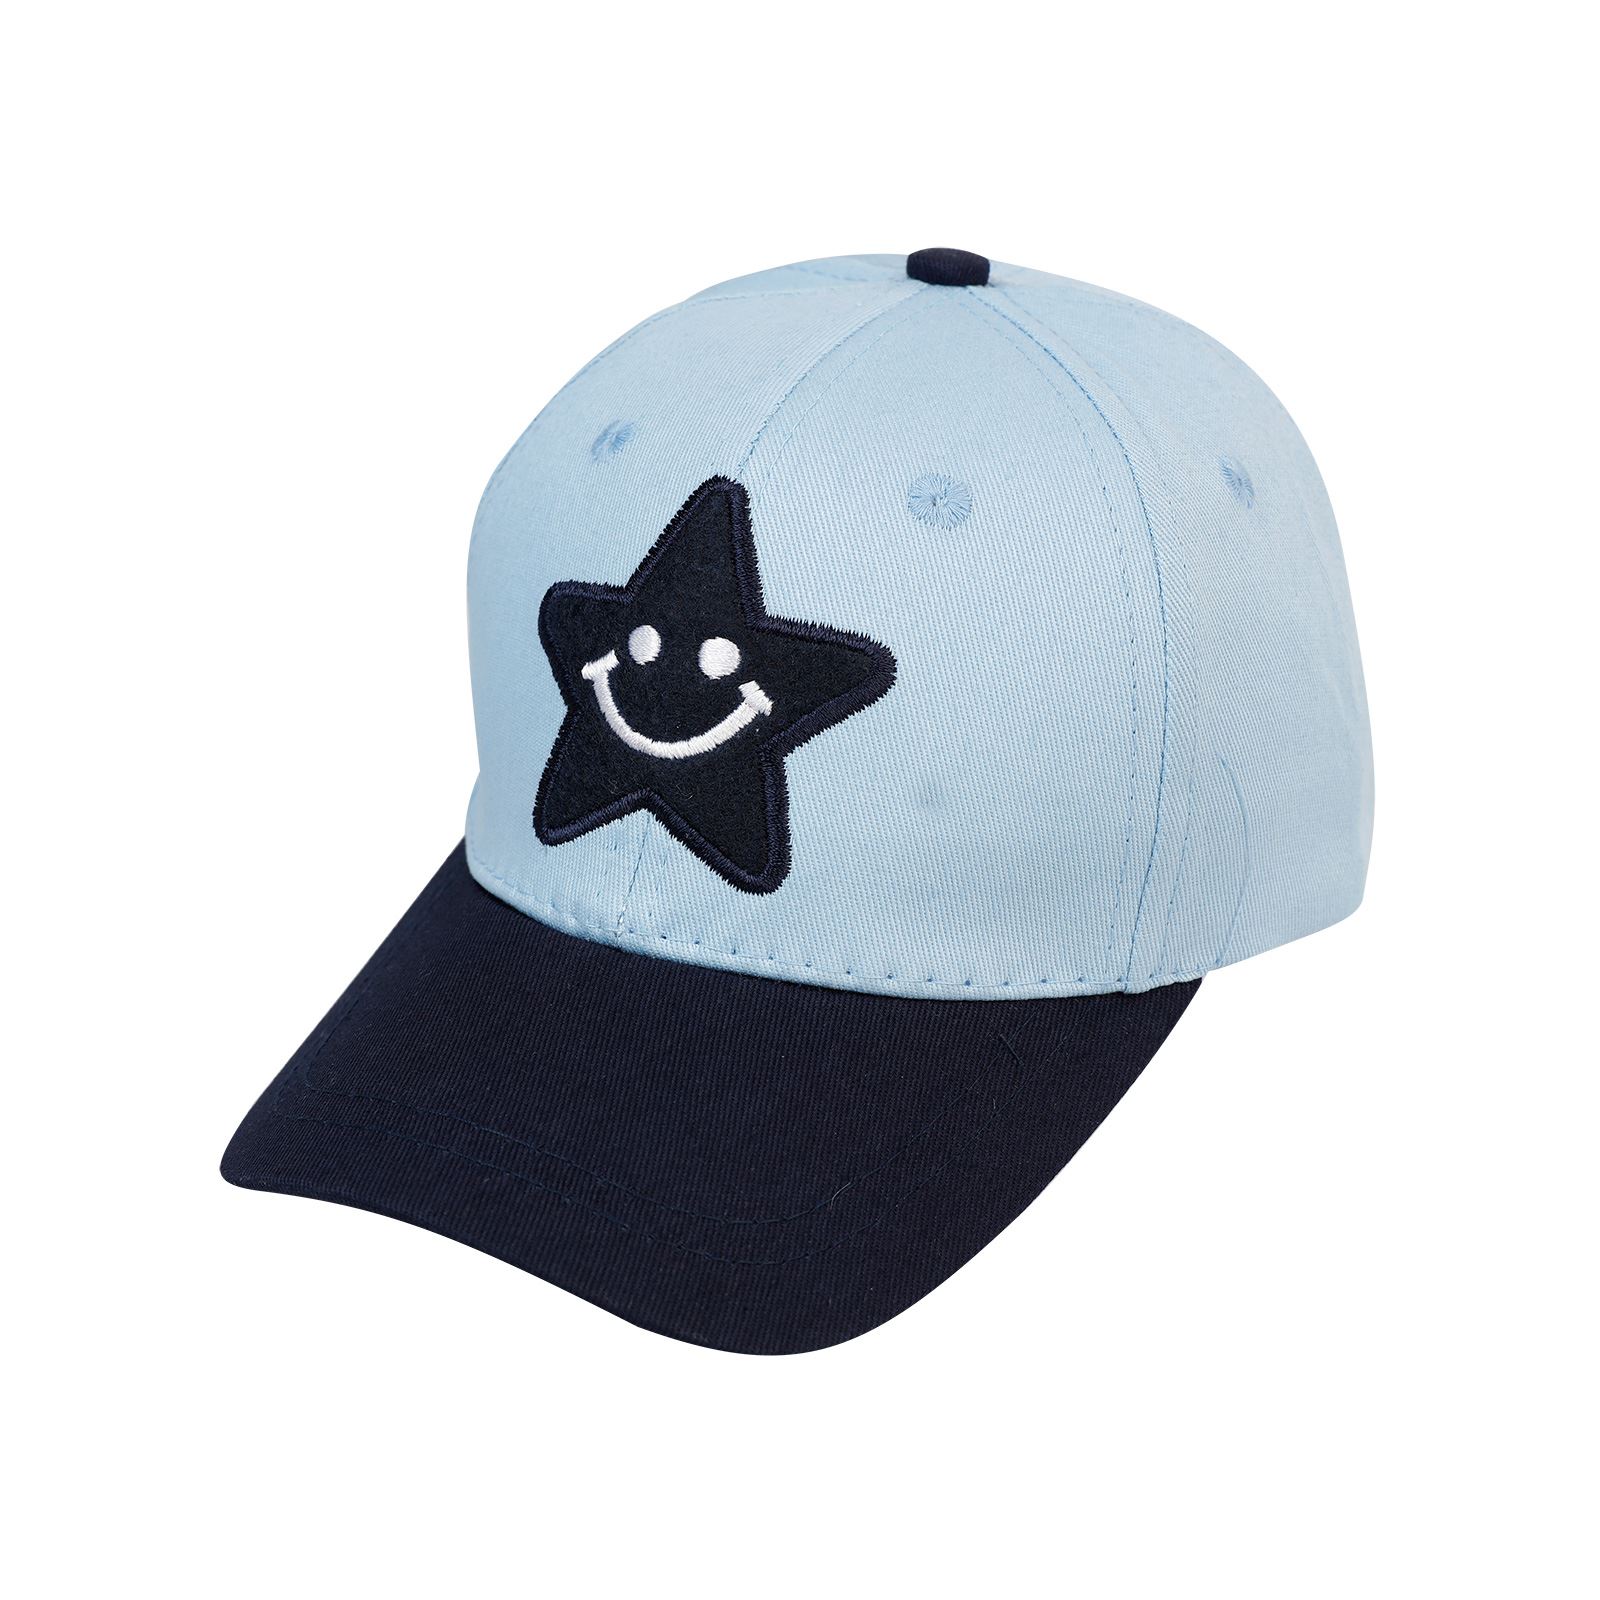 Tidi Erkek Çocuk Kep Şapka 2-5 Yaş Mavi